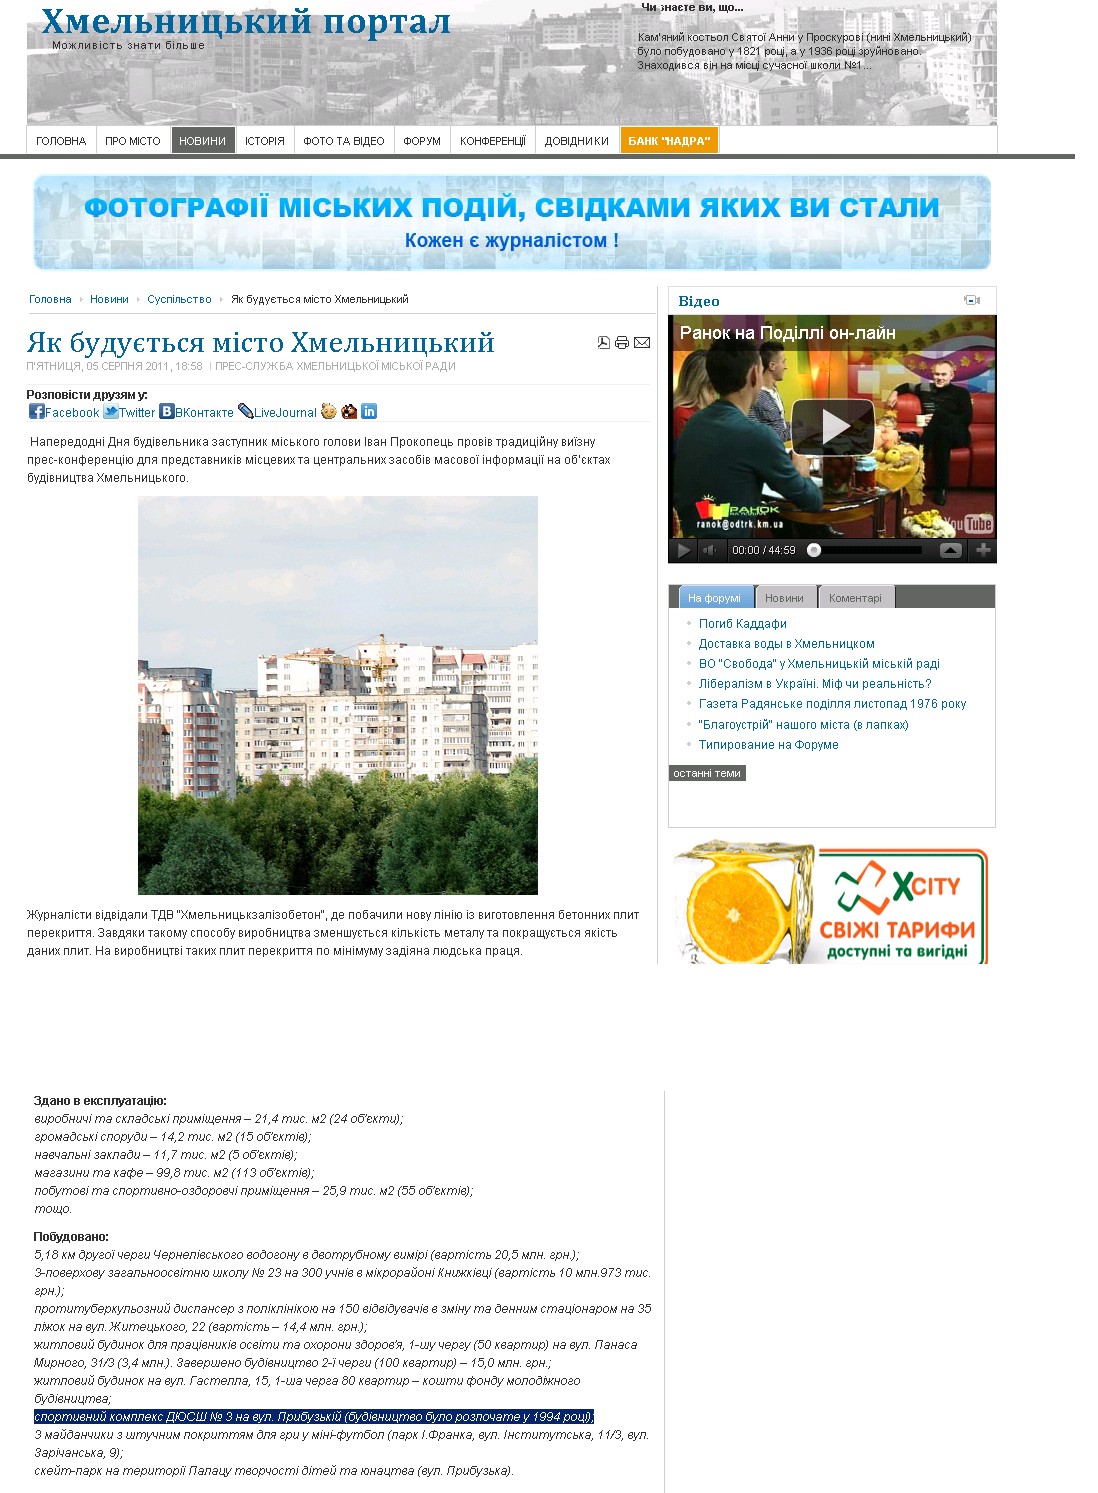 http://proskurov.info/news/society/8066-2011-08-05-17-02-06